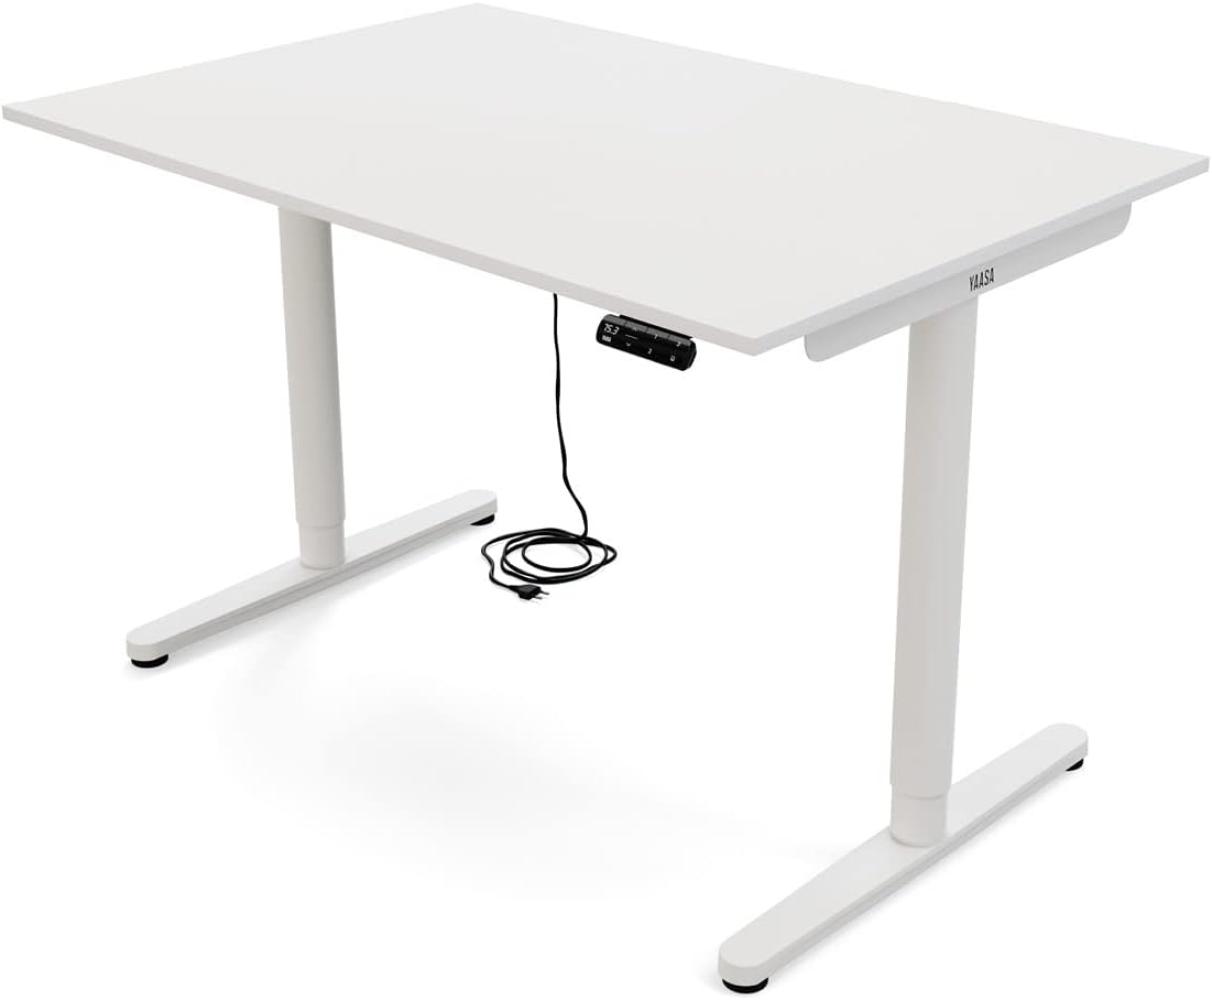 Yaasa Desk Essential Elektrisch höhenverstellbarer Schreibtisch, 160 x 80 cm, Weiß Bild 1